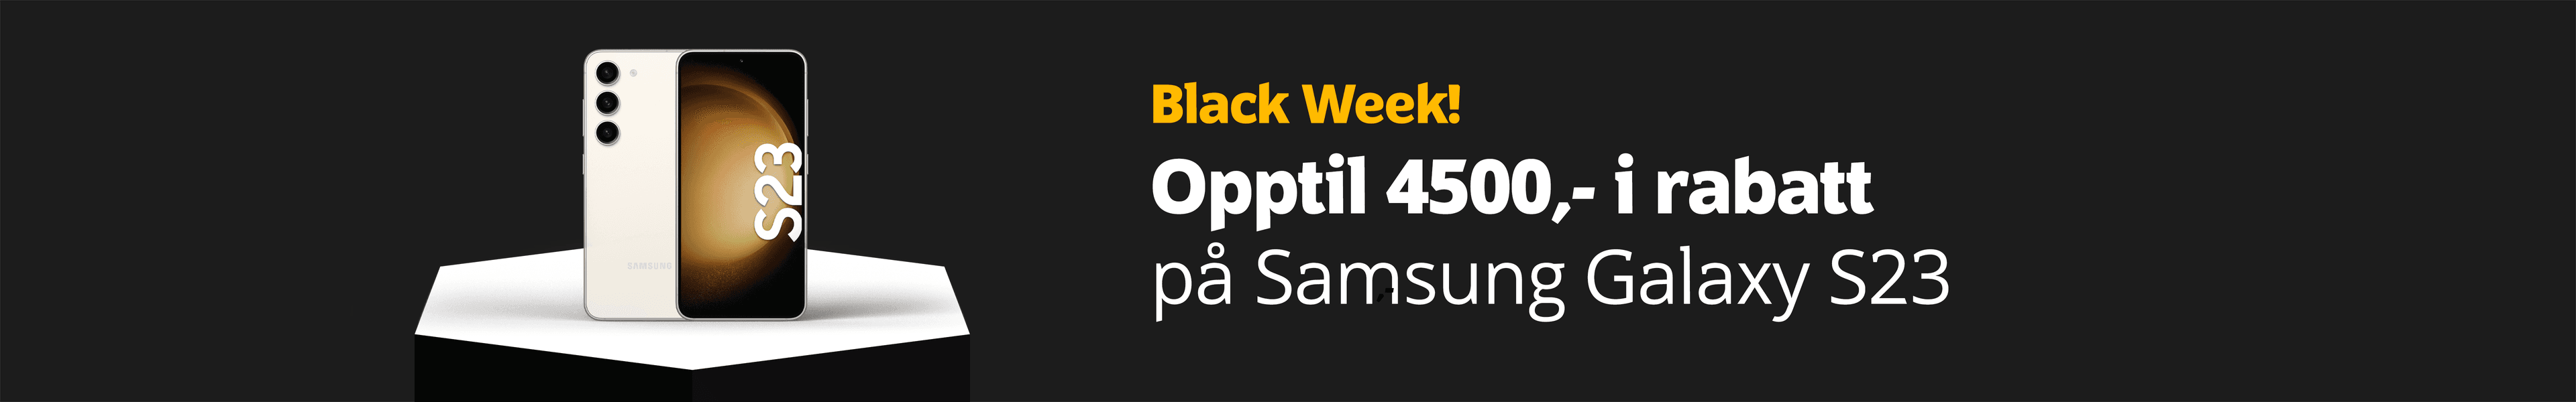 Black Week! Opptil 4500,- i rabatt på Samsung Galaxy S23